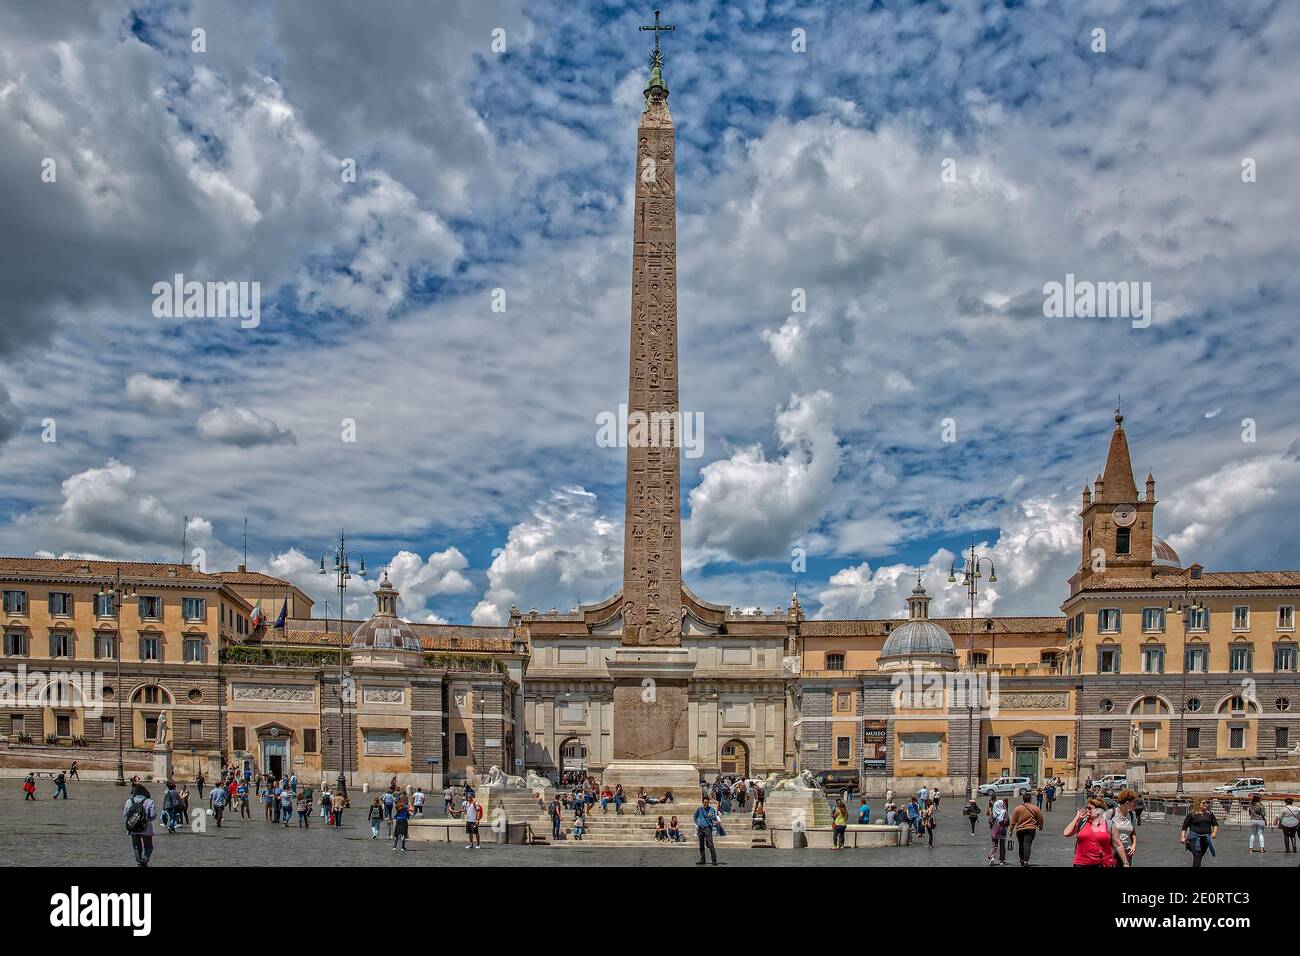 Les touristes visitent la Piazza Popolo dans le centre historique de Rome. Des lions et des fontaines de marbre entourent un vieil obélisque dans le centre de Piazza Popolo, Rome, Italie Banque D'Images